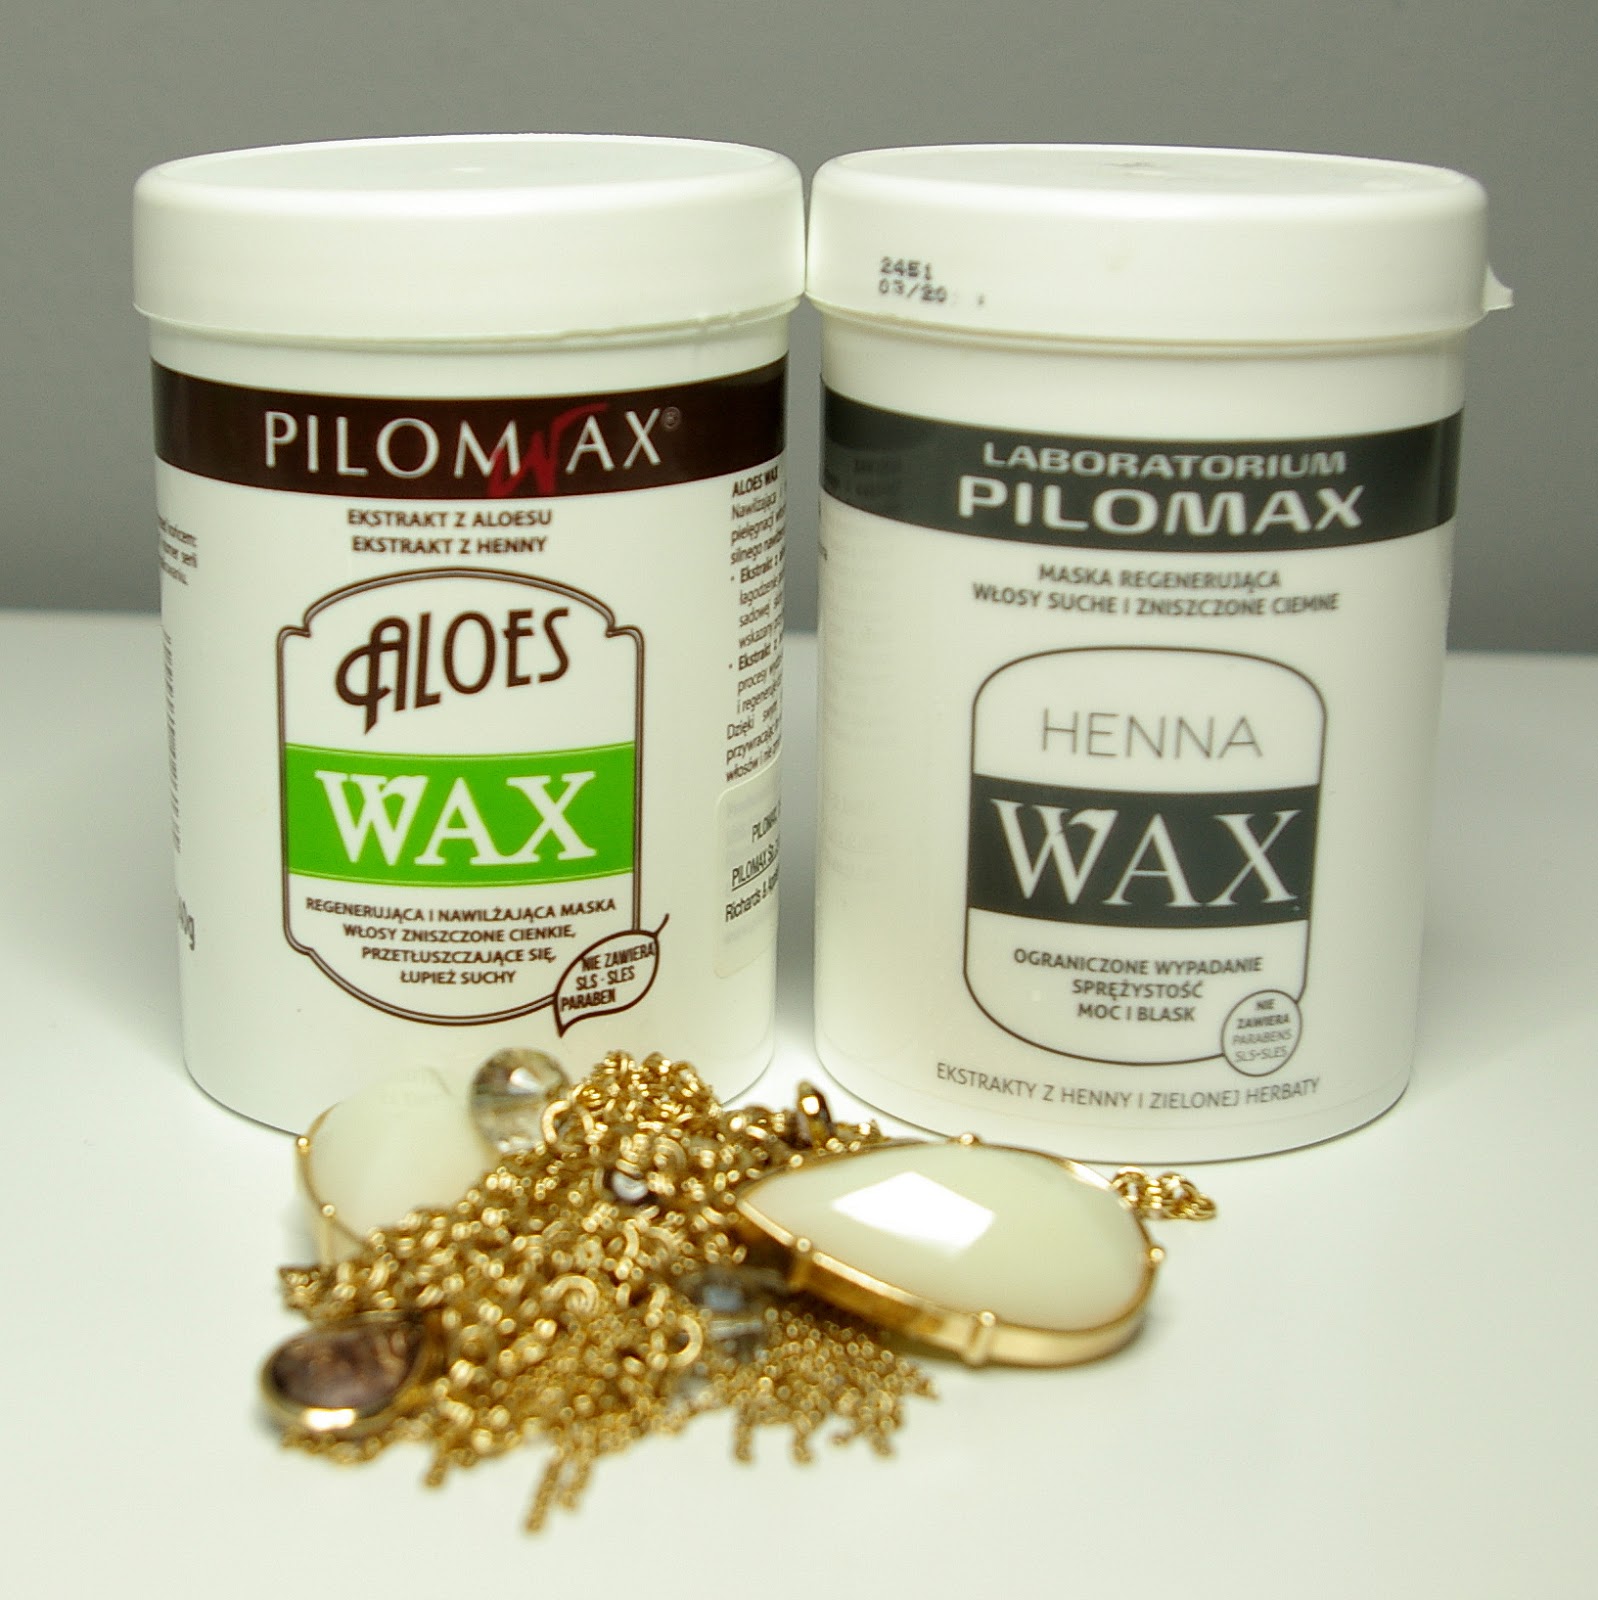 włosy, PILOMAX, pielęgnacja włosów, wypadanie włosów, jak zapobiegać wypadaniu włosów, Pielęgnacja włosów suchych, maska wax, głęboko oczyszczający szampon,kwc wizaz